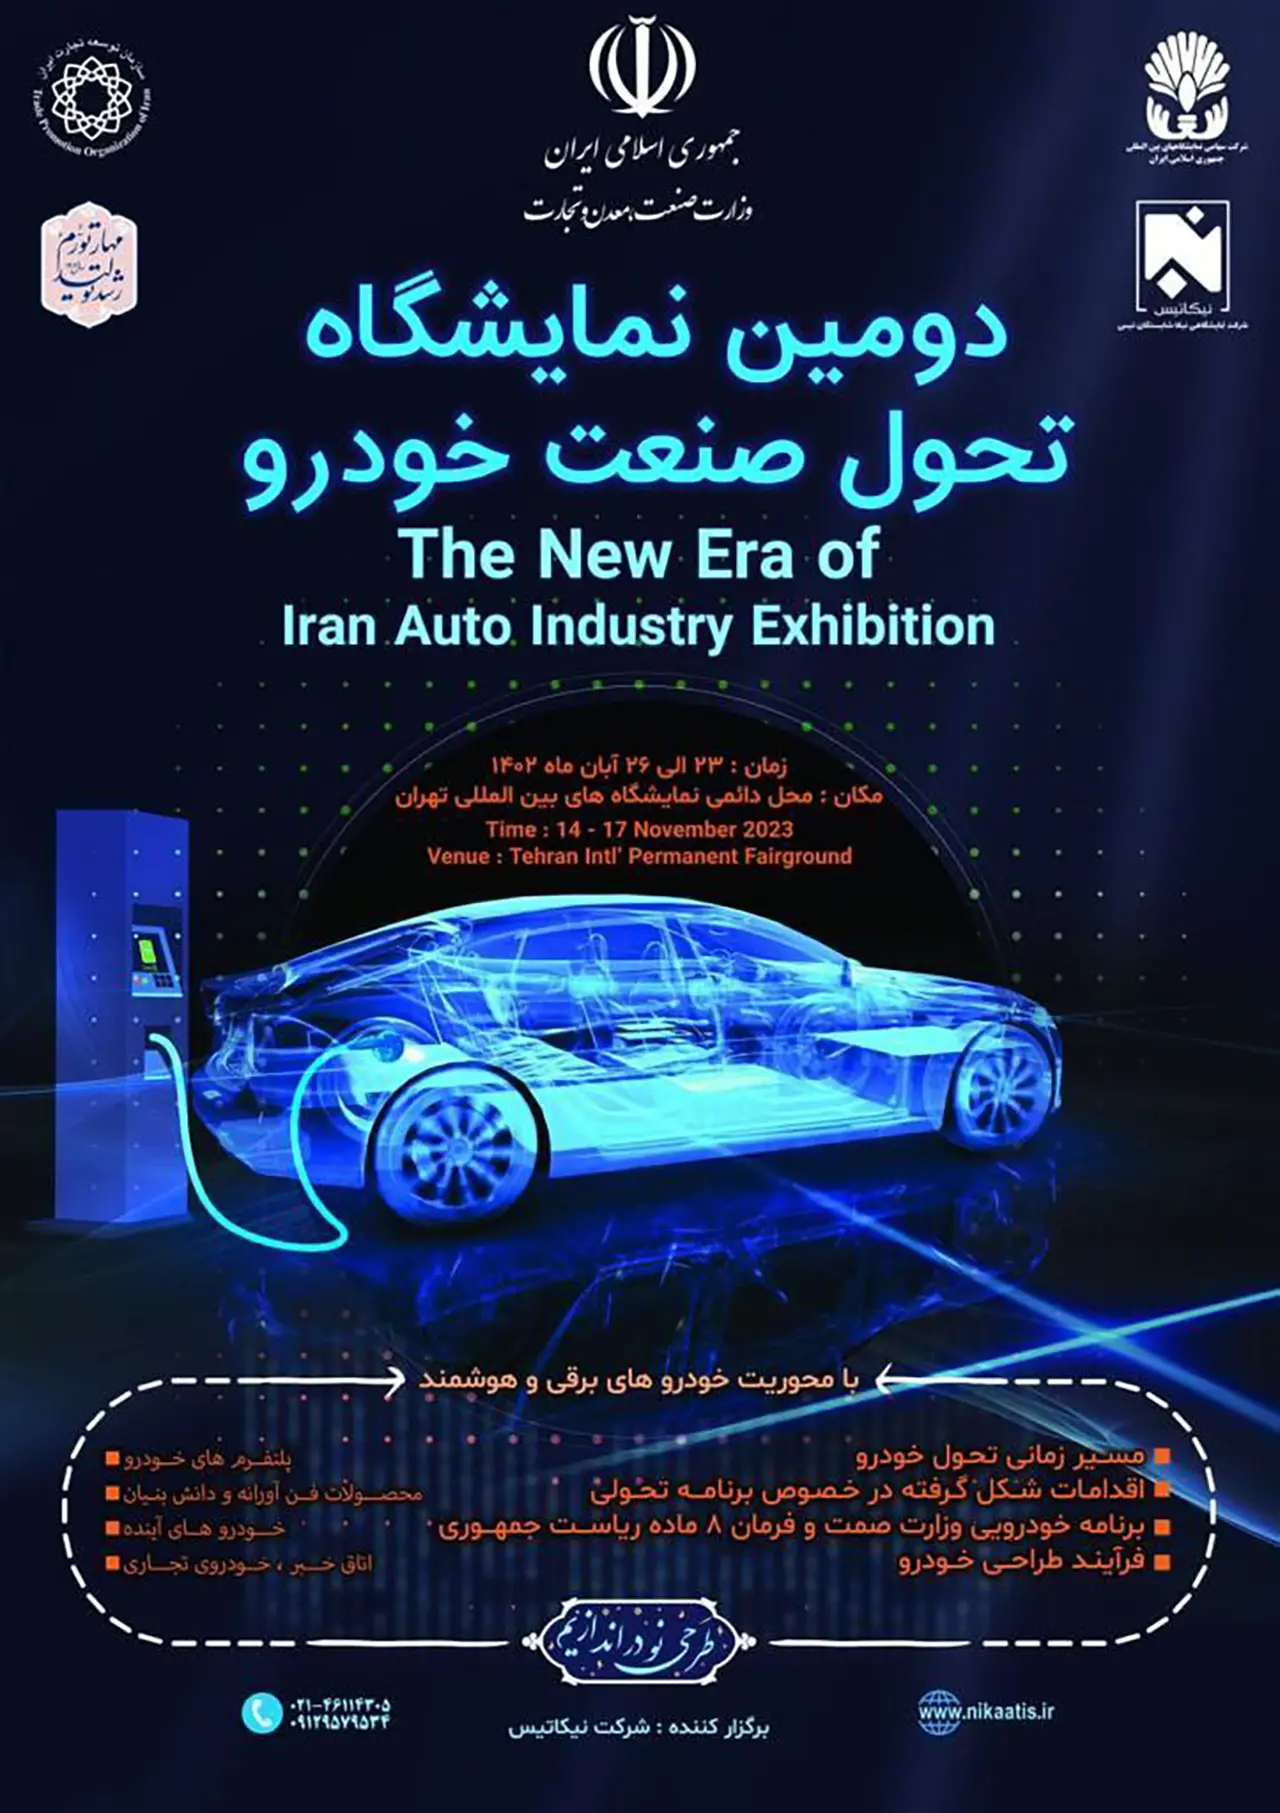 AutomobileFa Automobile industry transformation exhibition 01